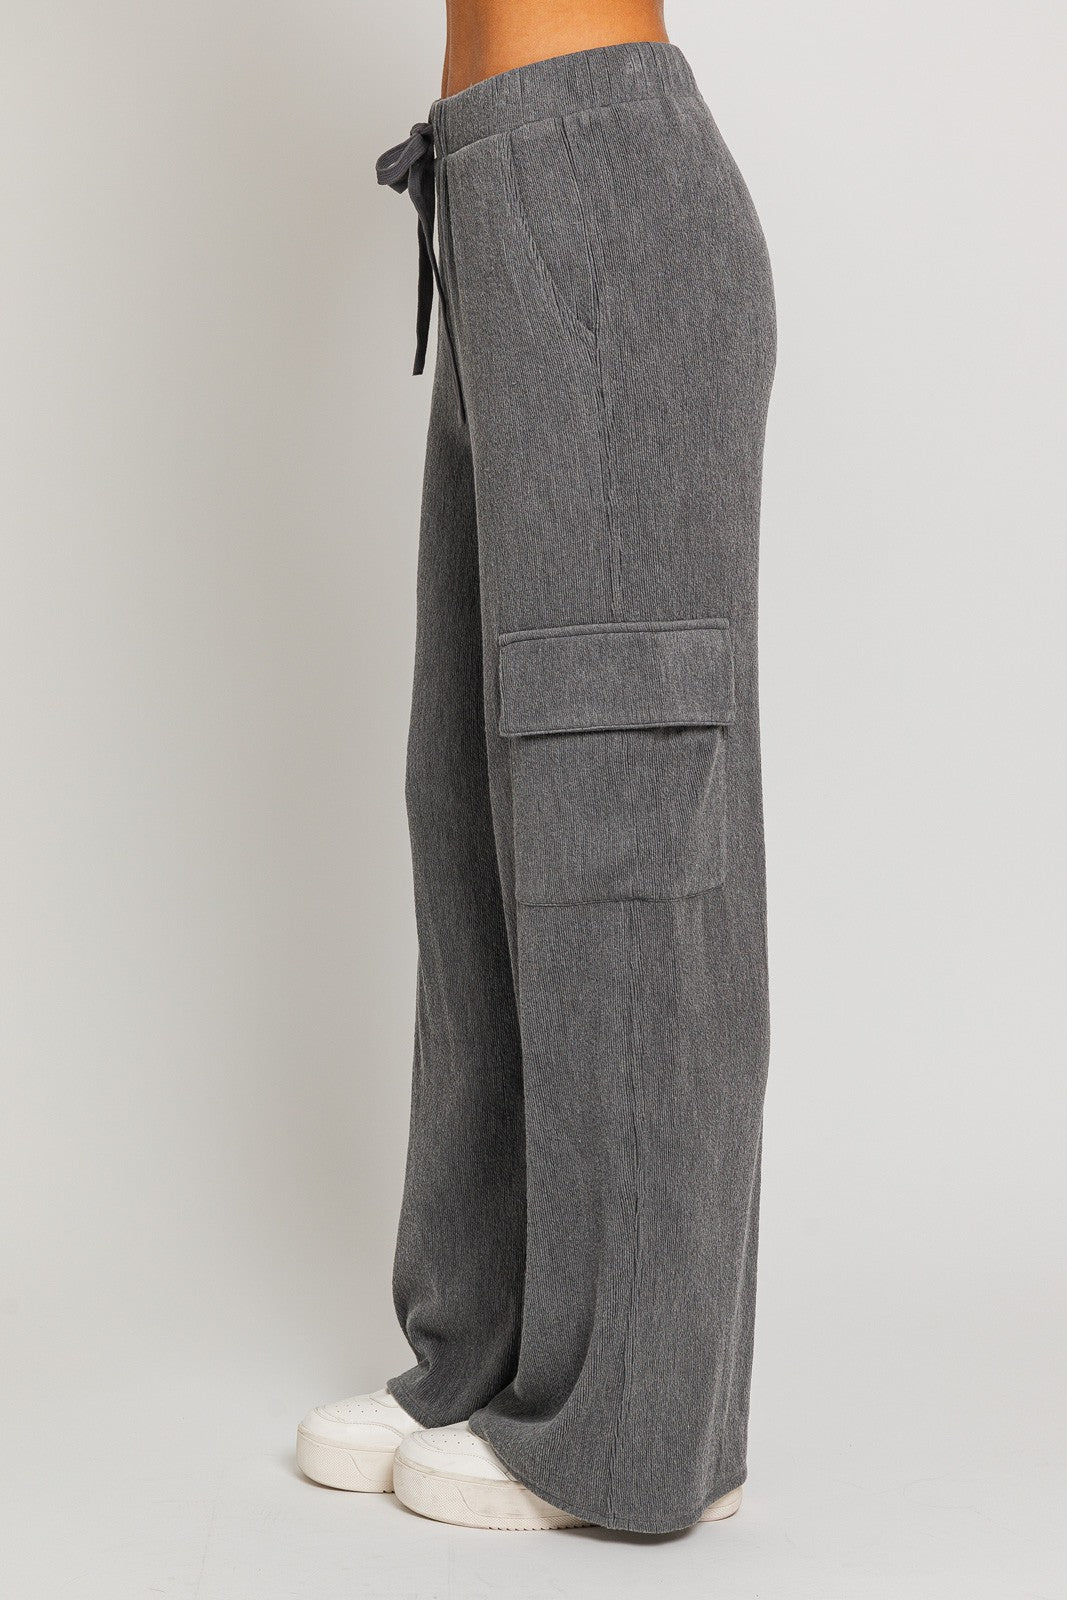 Drift Cargo Pant Charcoal, Pant Bottom by Le Lis | LIT Boutique